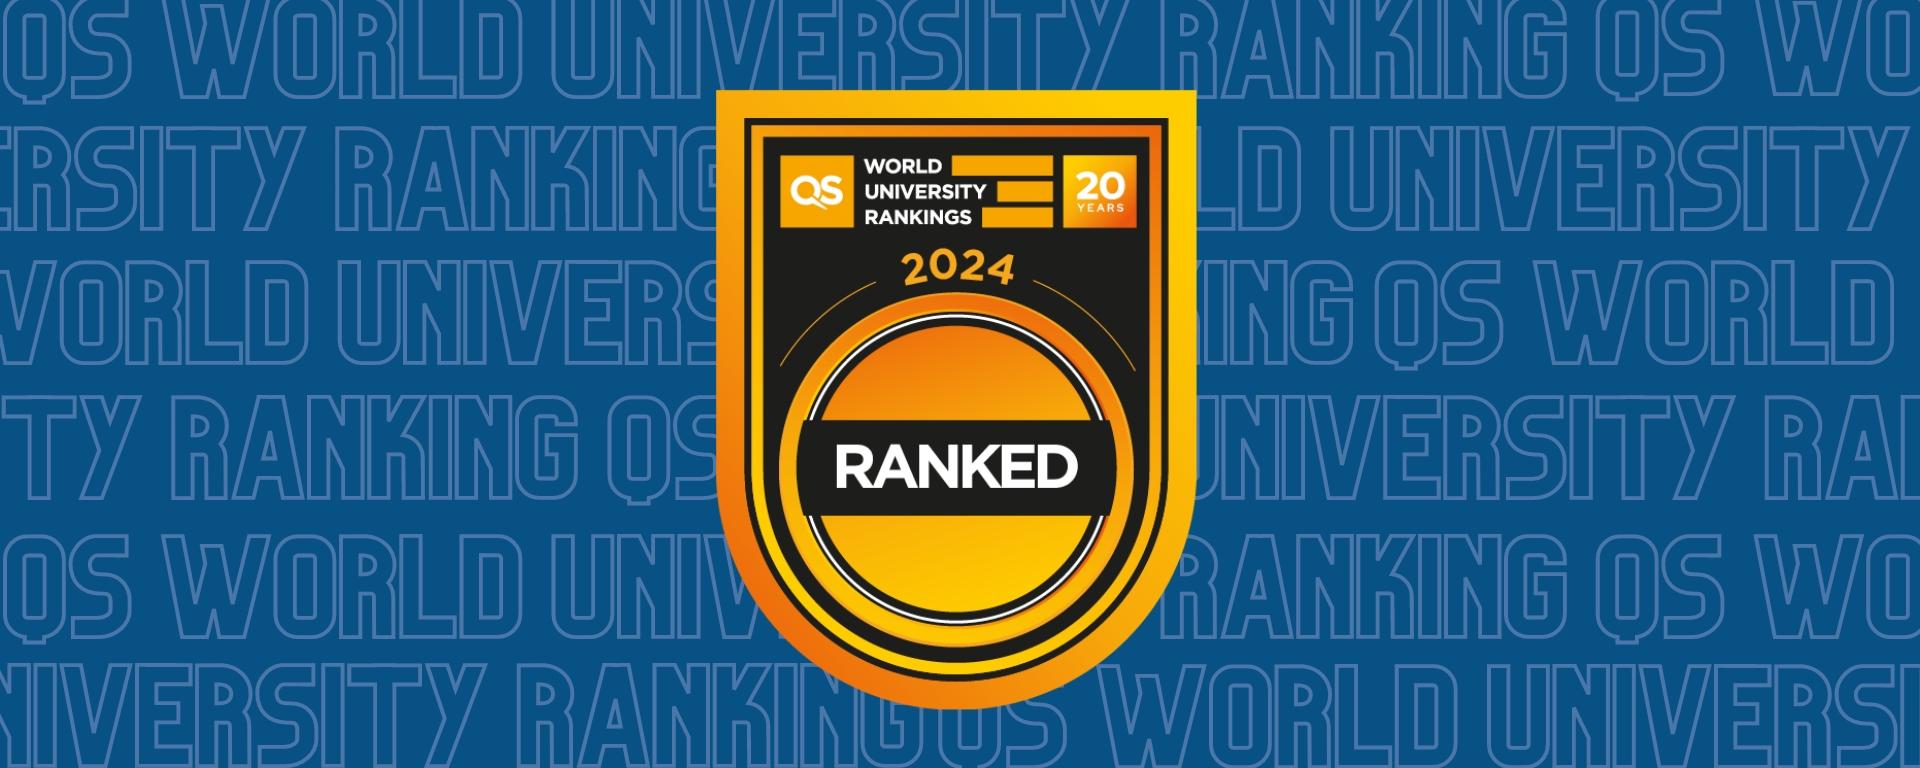 UM best ranked among Uruguayan universities in QSWUR 2024